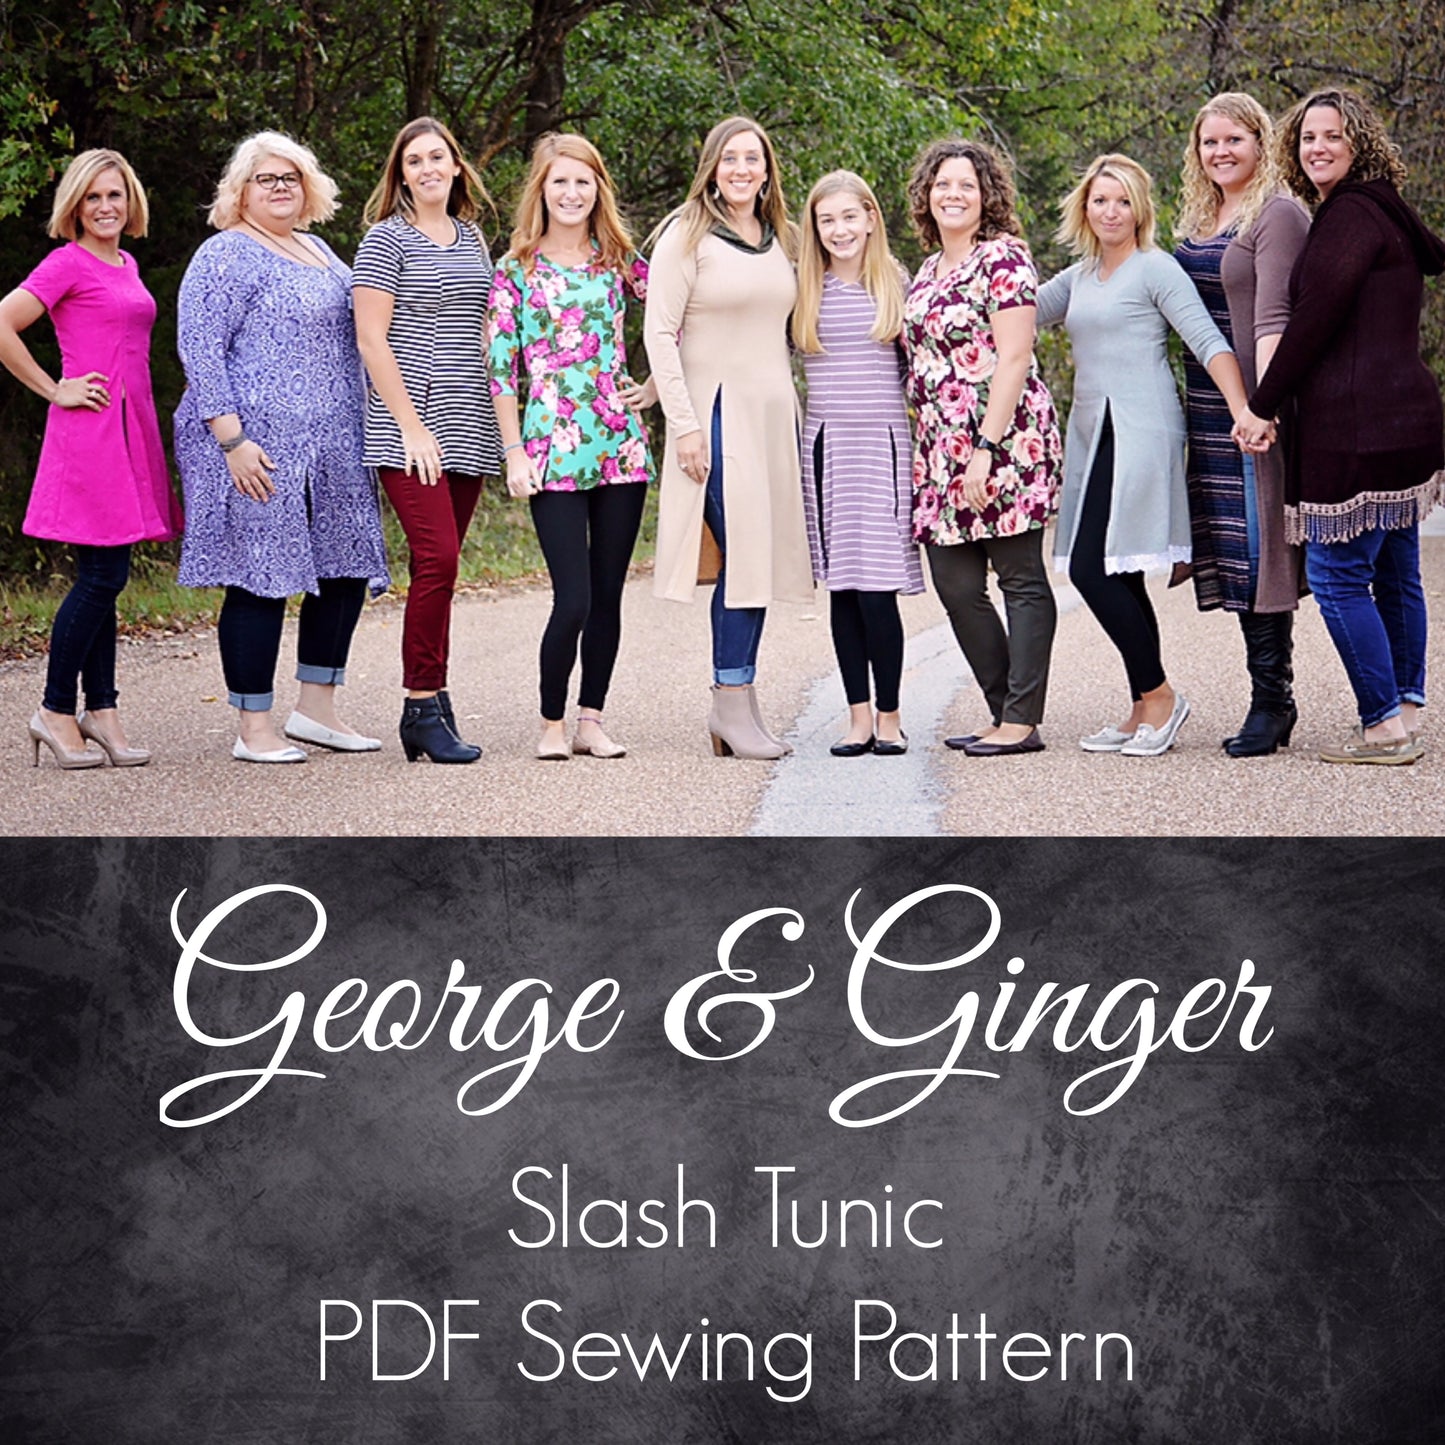 The Slash Tunic PDF Sewing Pattern